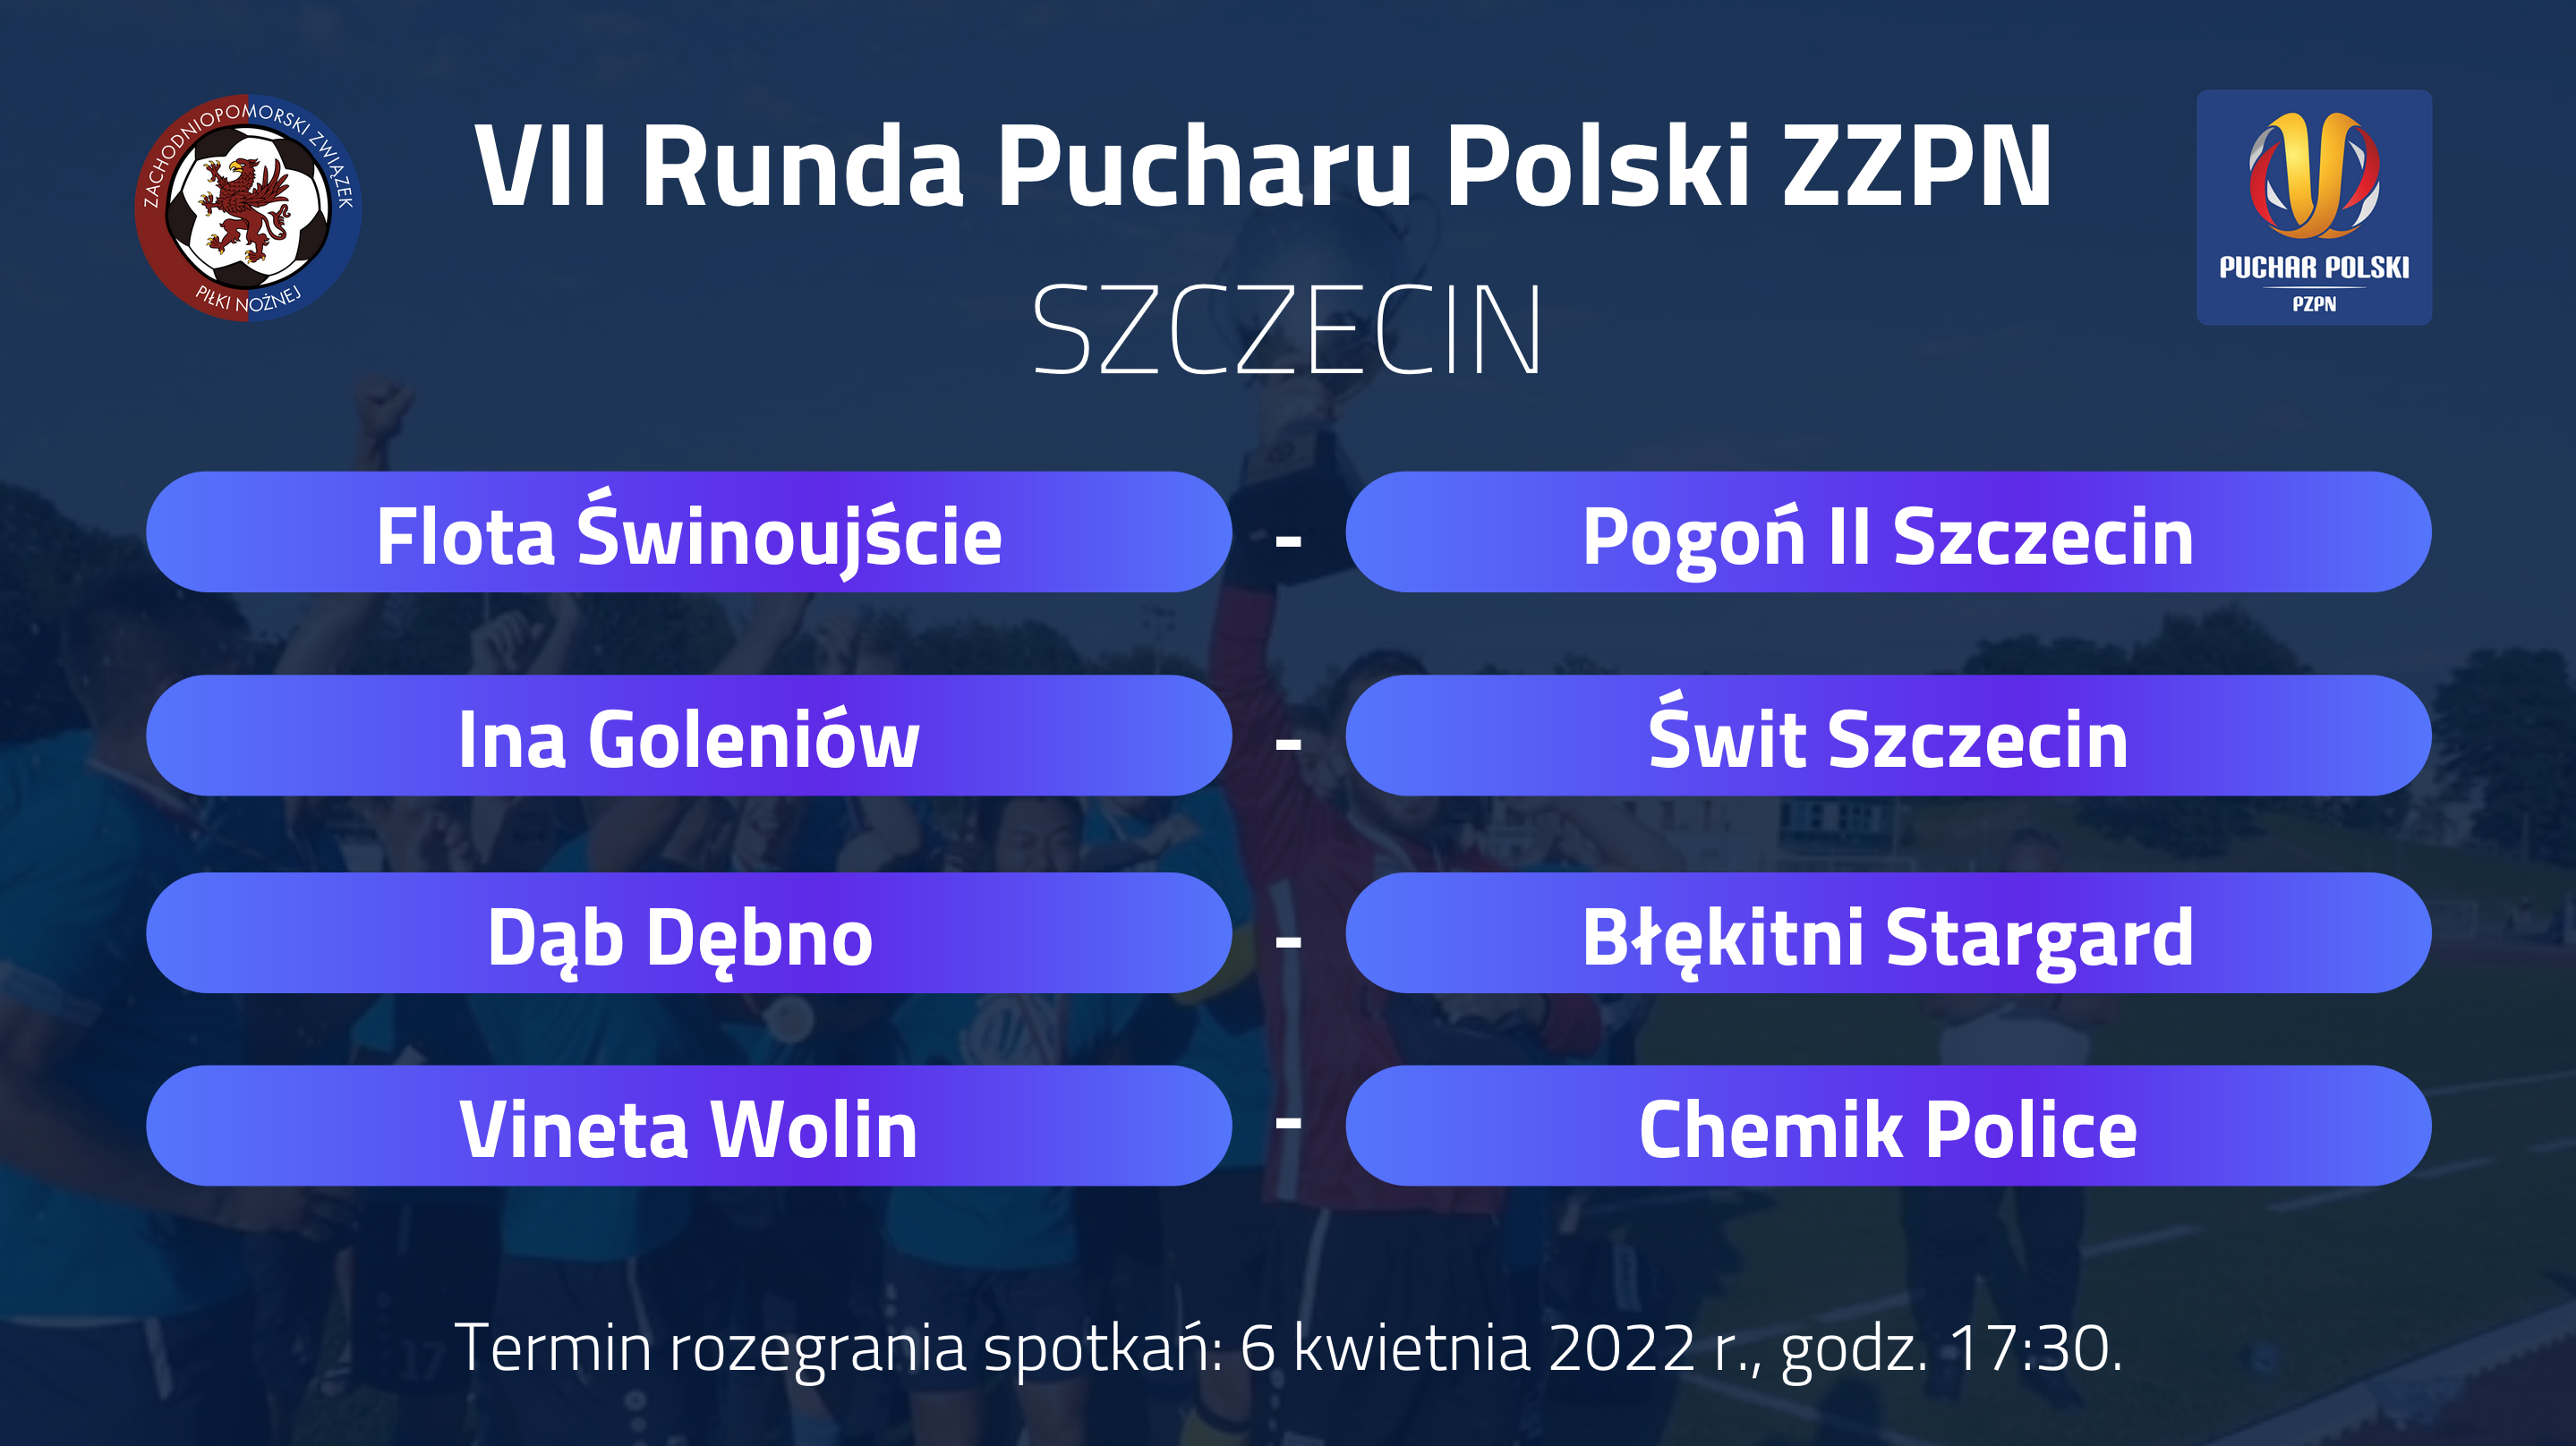 11 mar 22 wyniki losowania PP Szczecin